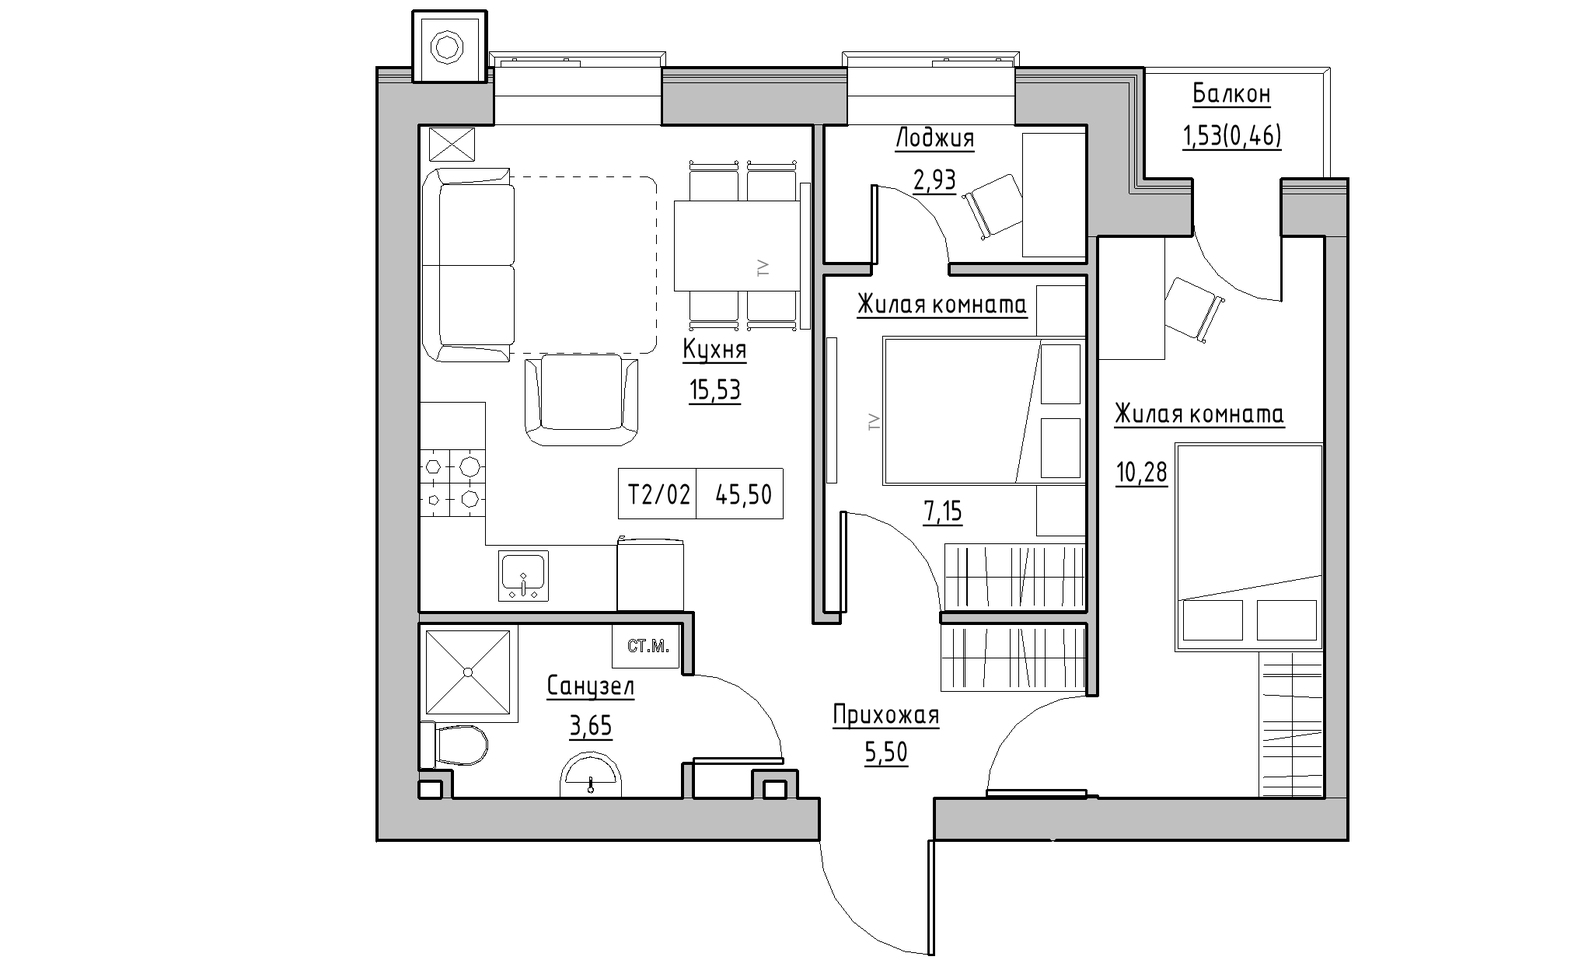 Планування 2-к квартира площею 45.5м2, KS-014-02/0008.